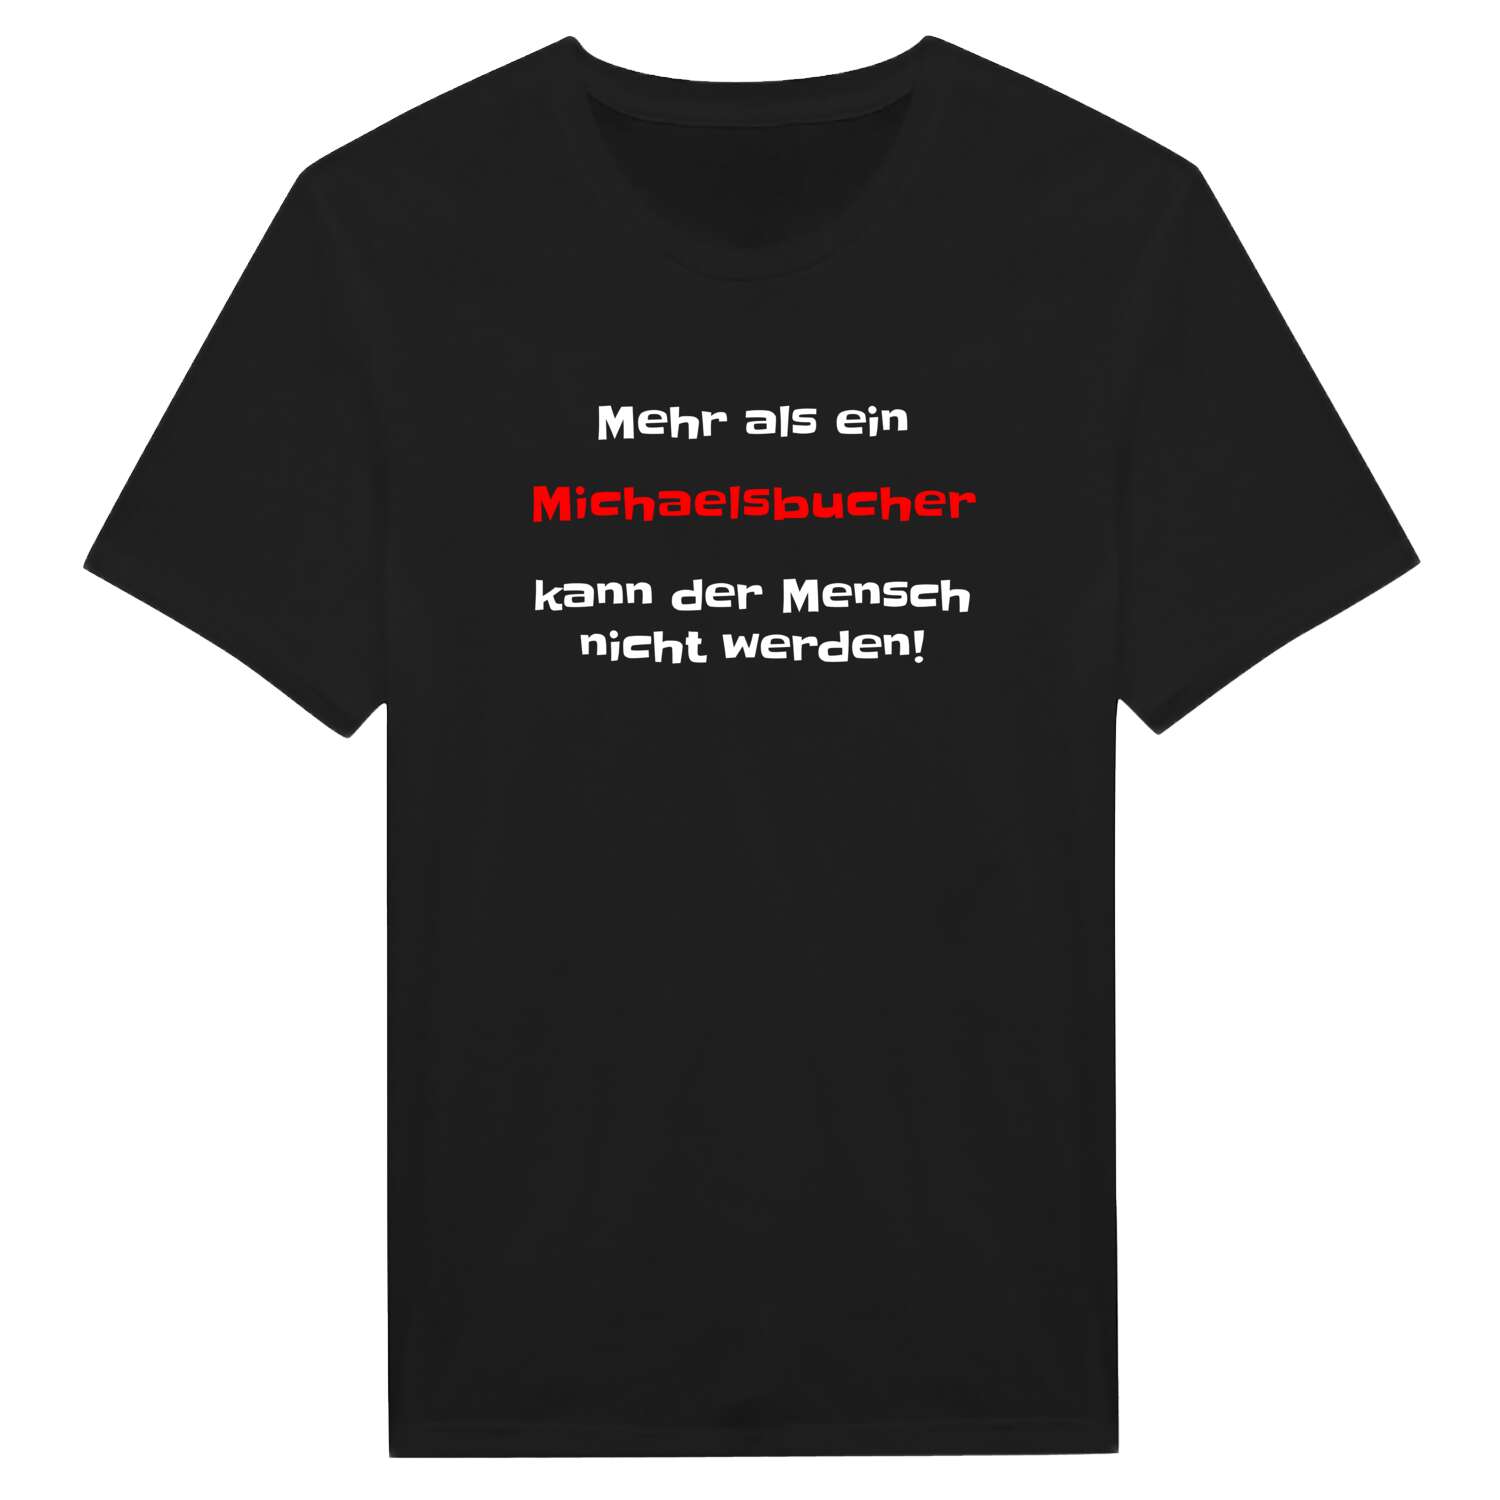 Michaelsbuch T-Shirt »Mehr als ein«